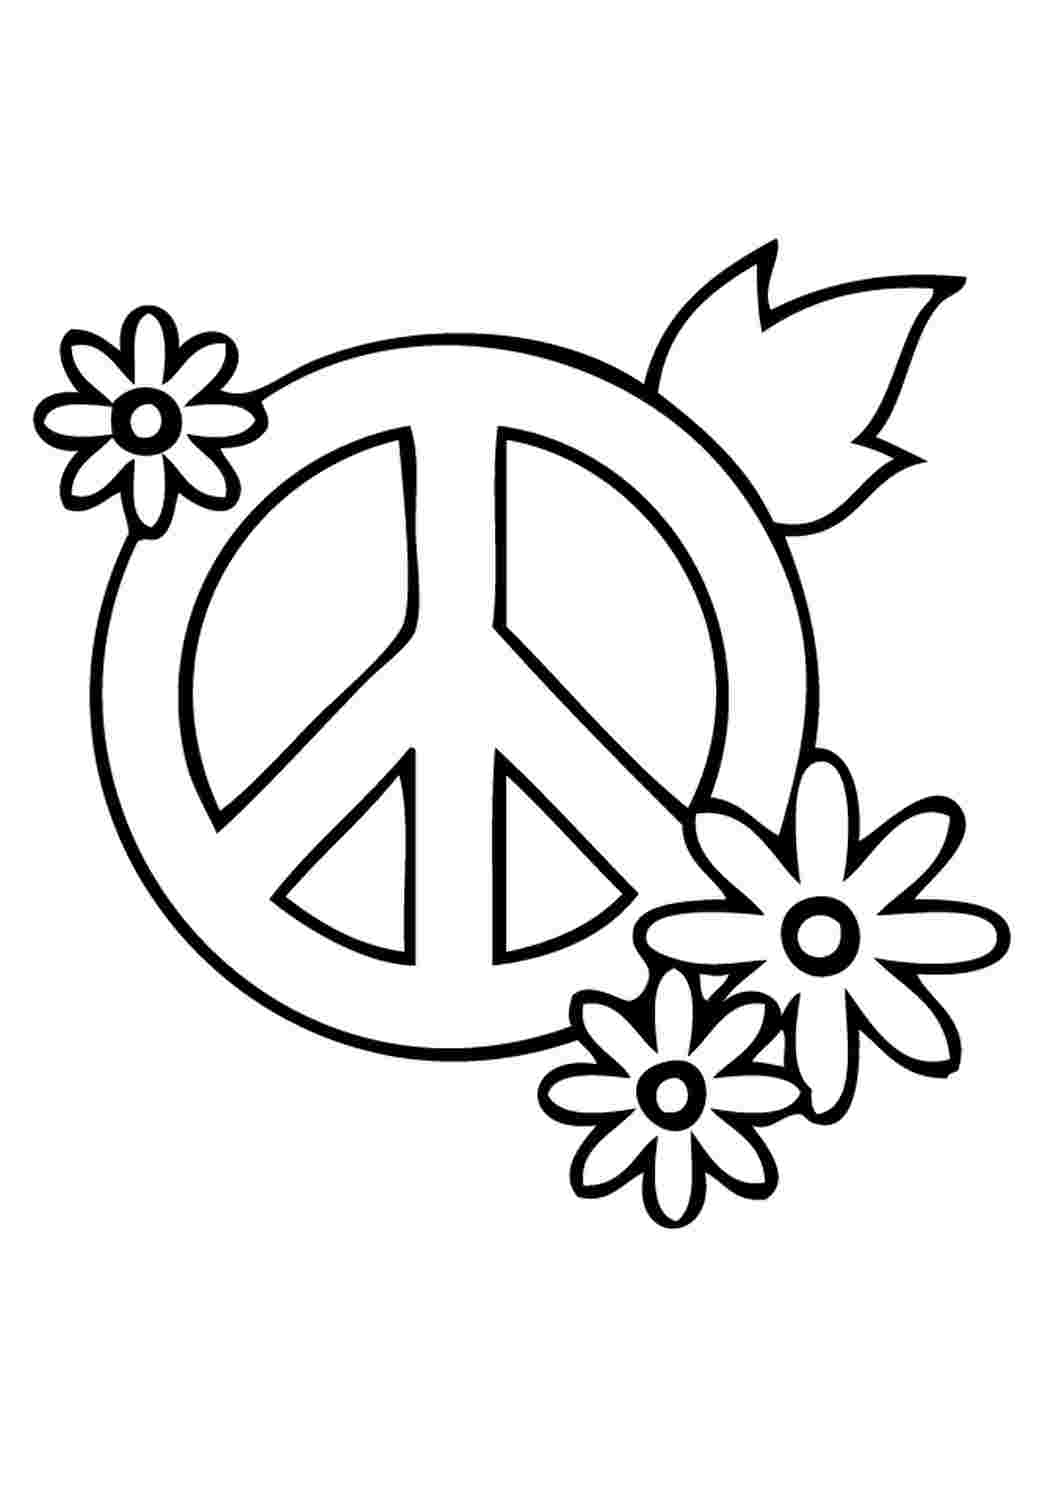 Раскраски знак мира и цветы. Раскраска. знак мира и цветы. Скачать раскраски бесплатно.